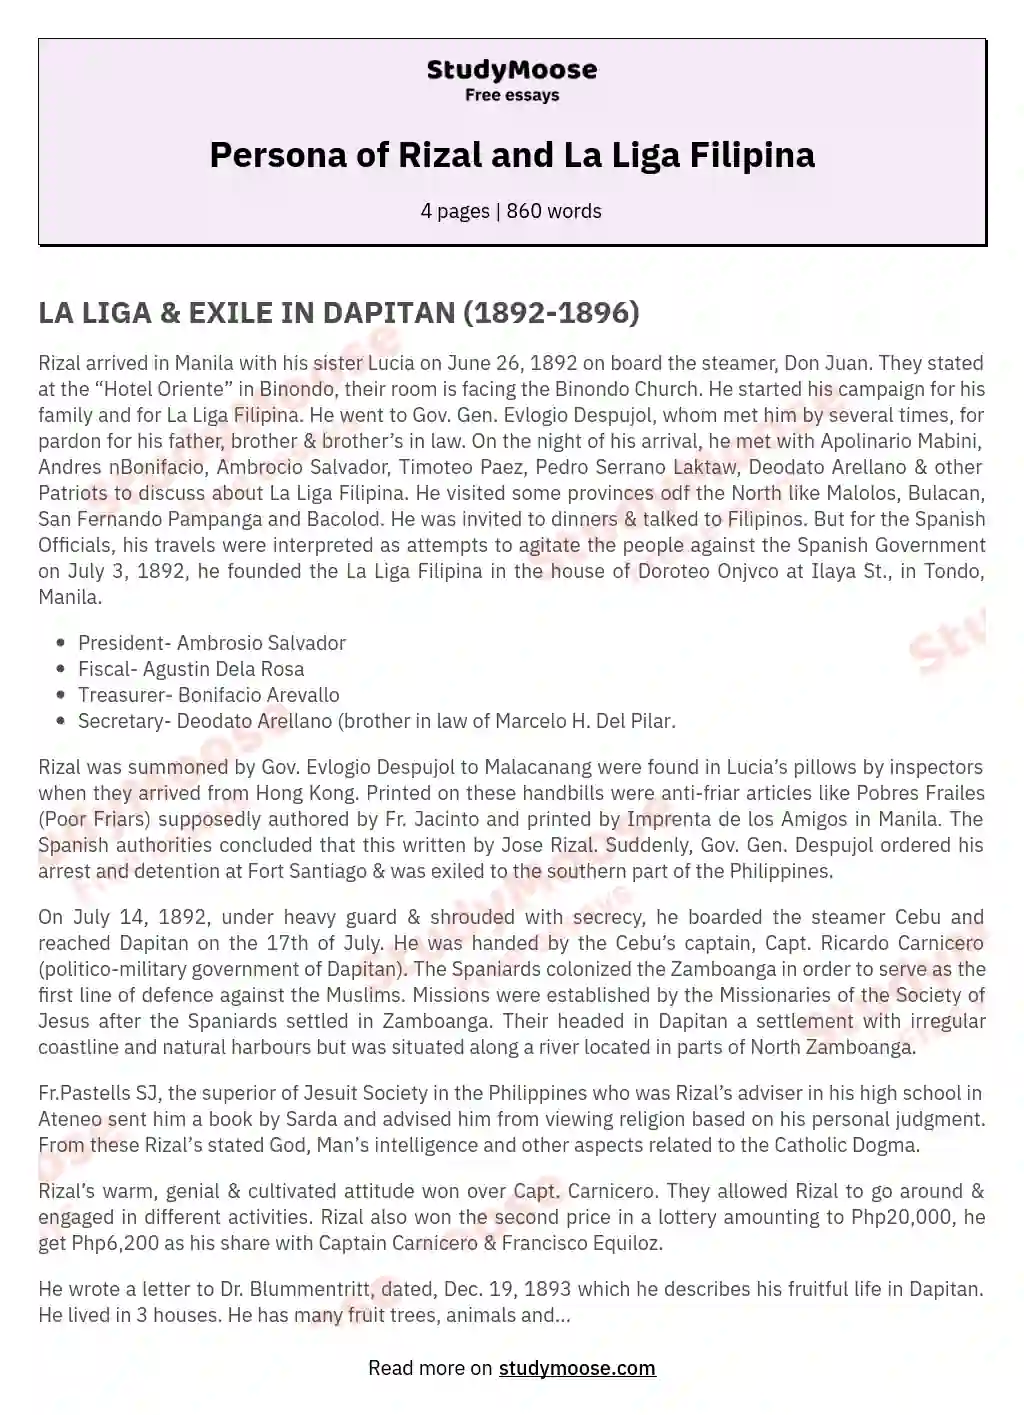 Persona of Rizal and La Liga Filipina essay